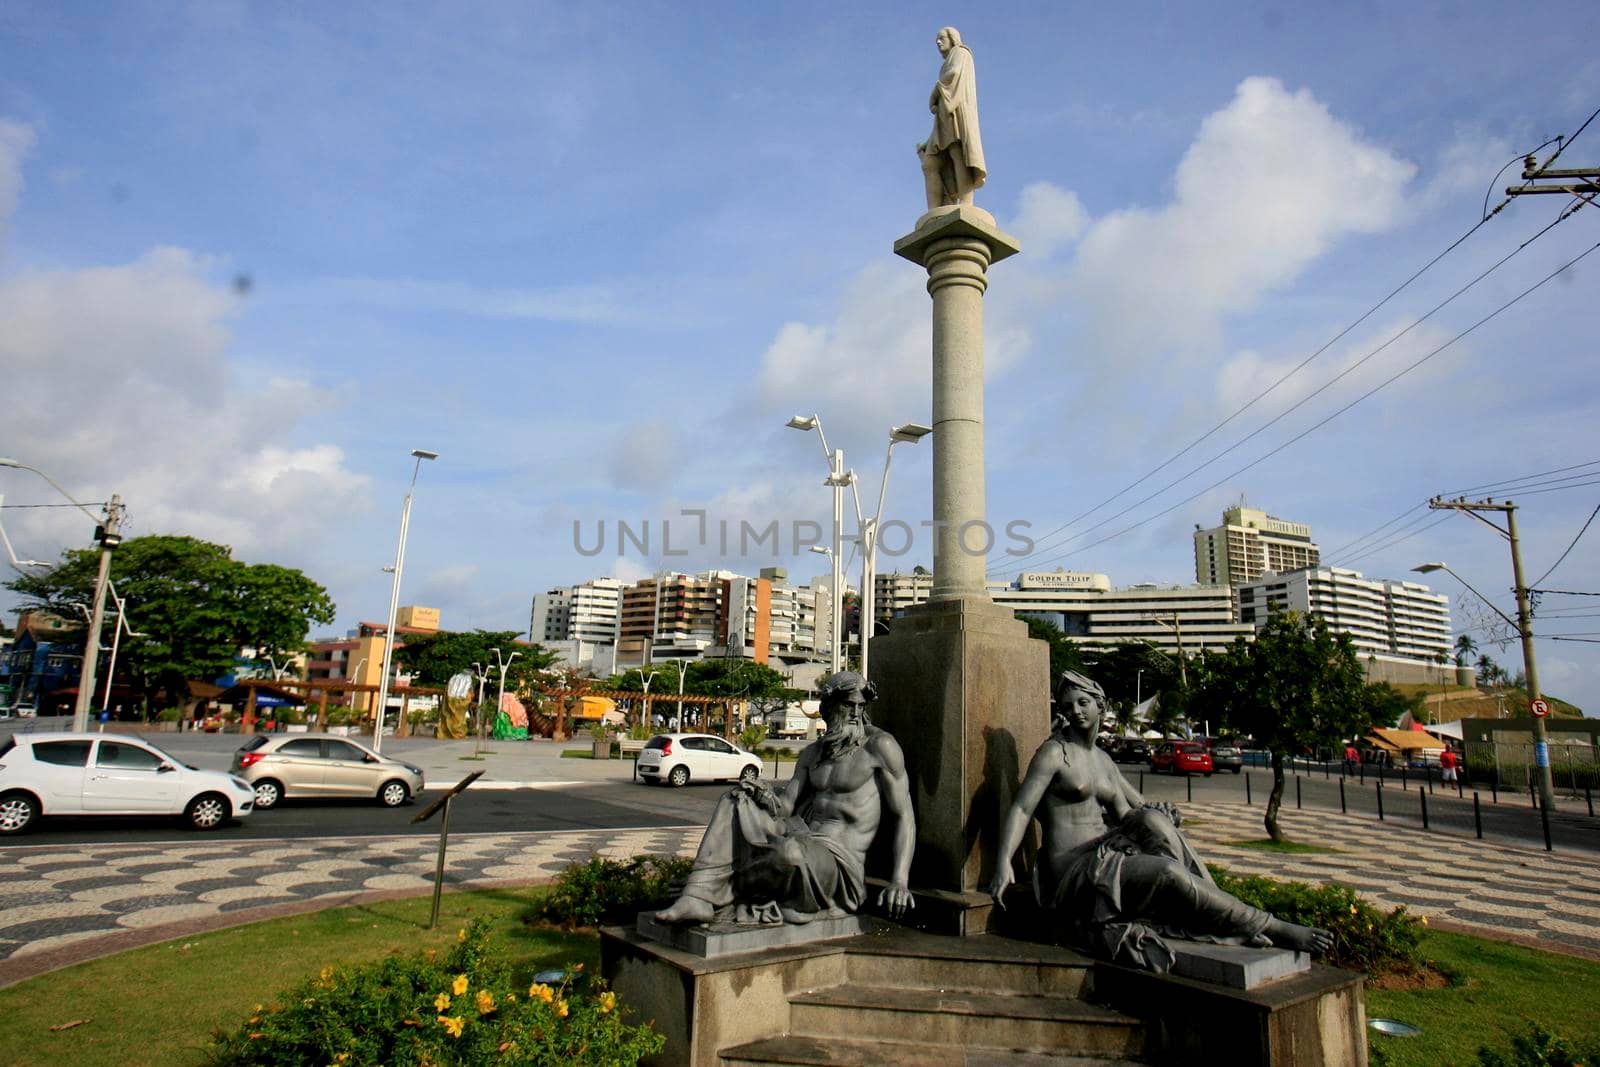 sculptures in the mariquita largo in Salvador by joasouza